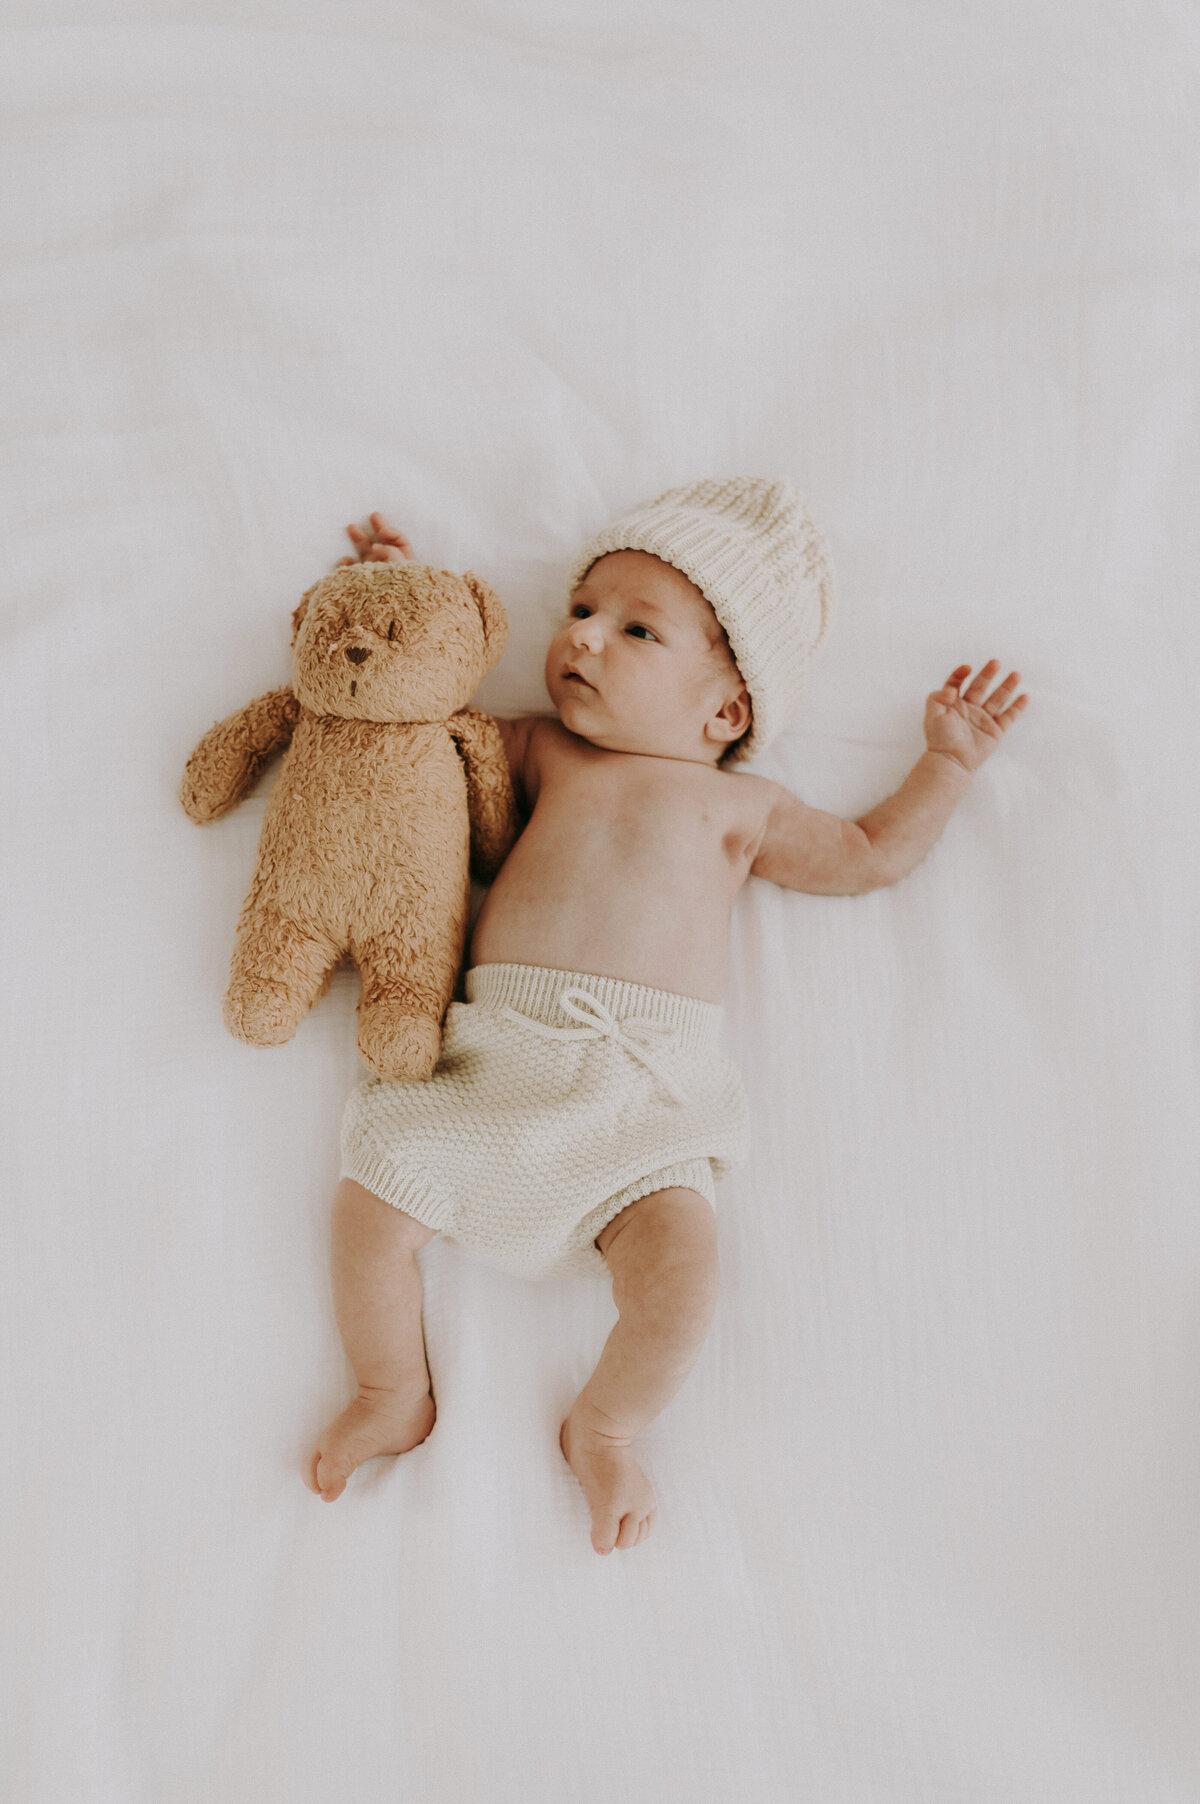 Baby ligt op het bed met teddybeer.